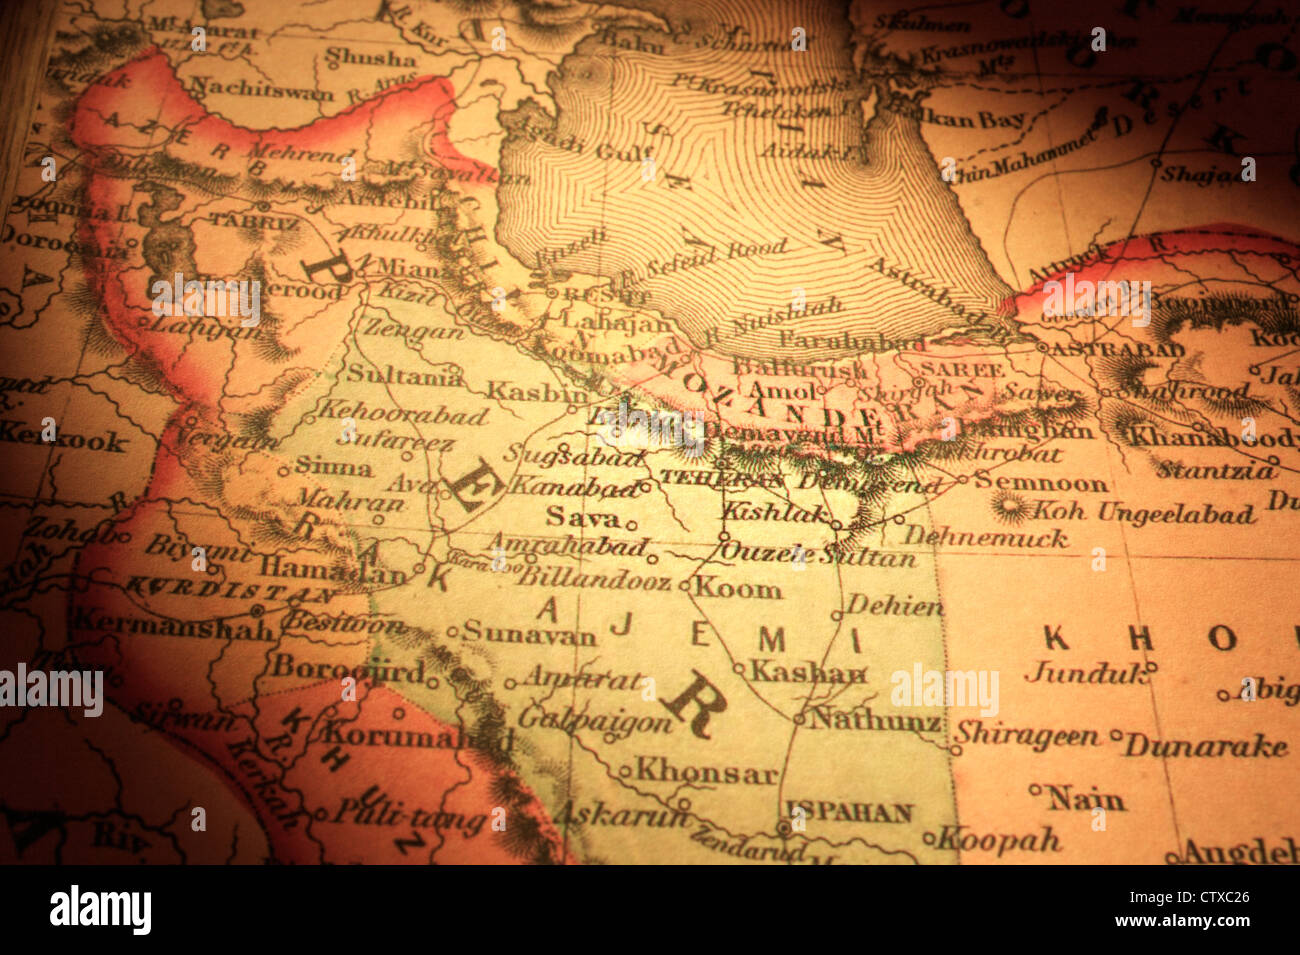 Mapa antiguo de Irán/Persia, centrada en Teherán. Mapa es de 1855 y derecho de autor. Foto de stock